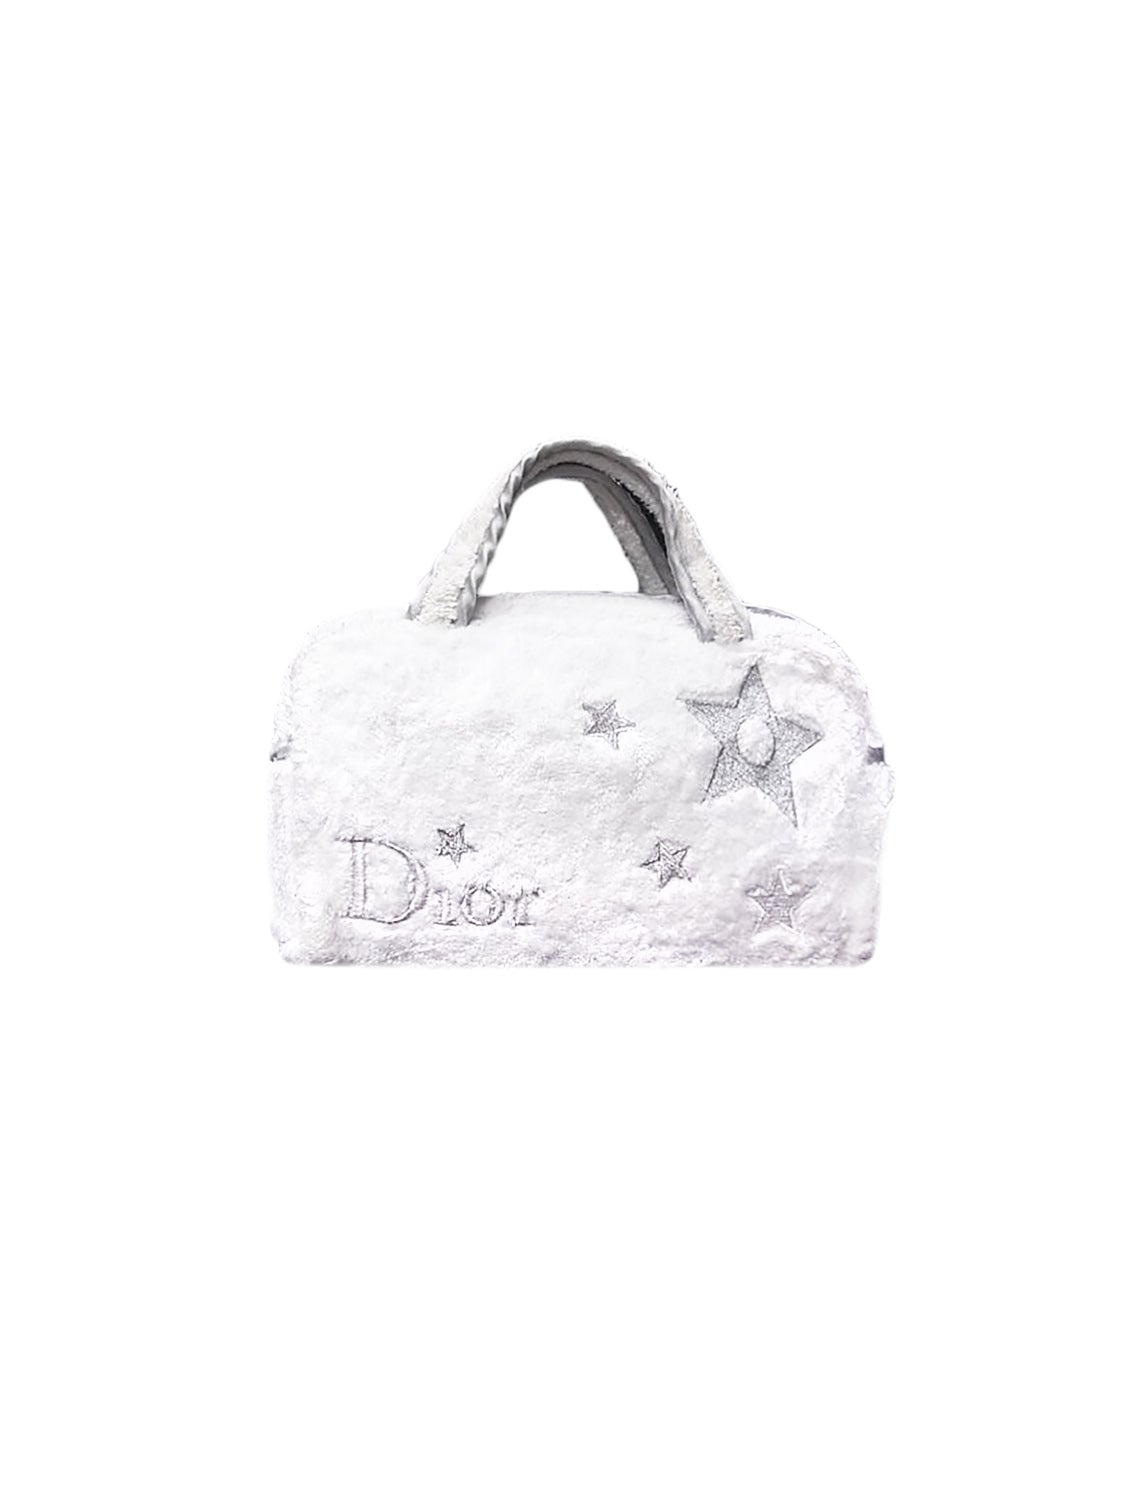 Christian Dior 2000s Rare Round Trotter Handbag · INTO